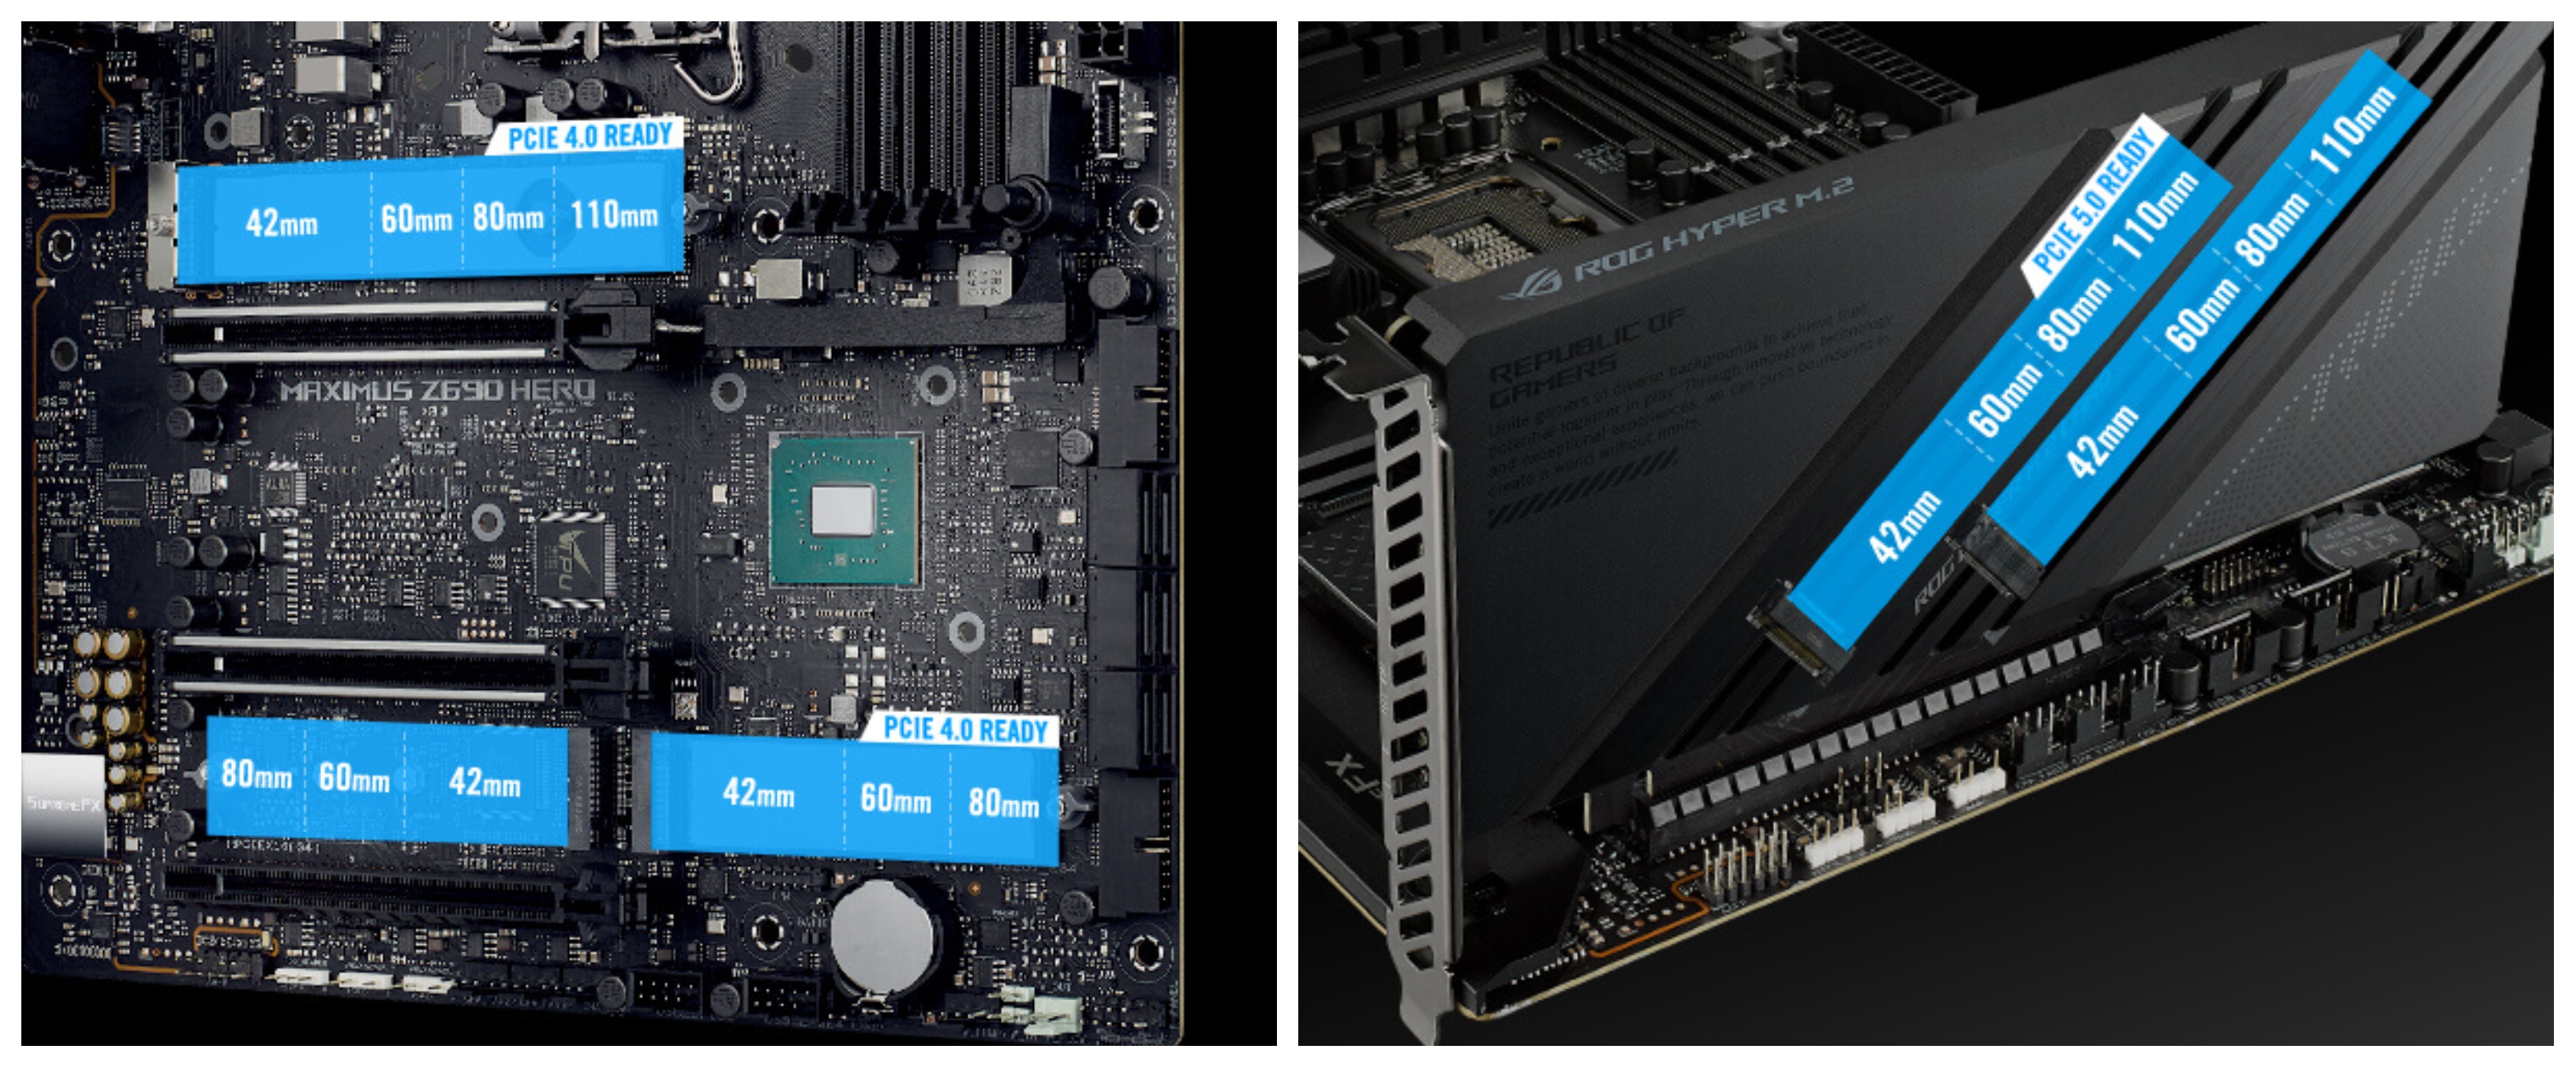 Základní deska Asus ROG Maximus Z690 Hero je připravena na přidání grafické karty díky modernímu slotu PCI Express 5.0 16x, který přináší až 2násobnou rychlost přenosu dat oproti standardu PCIe 4.0.